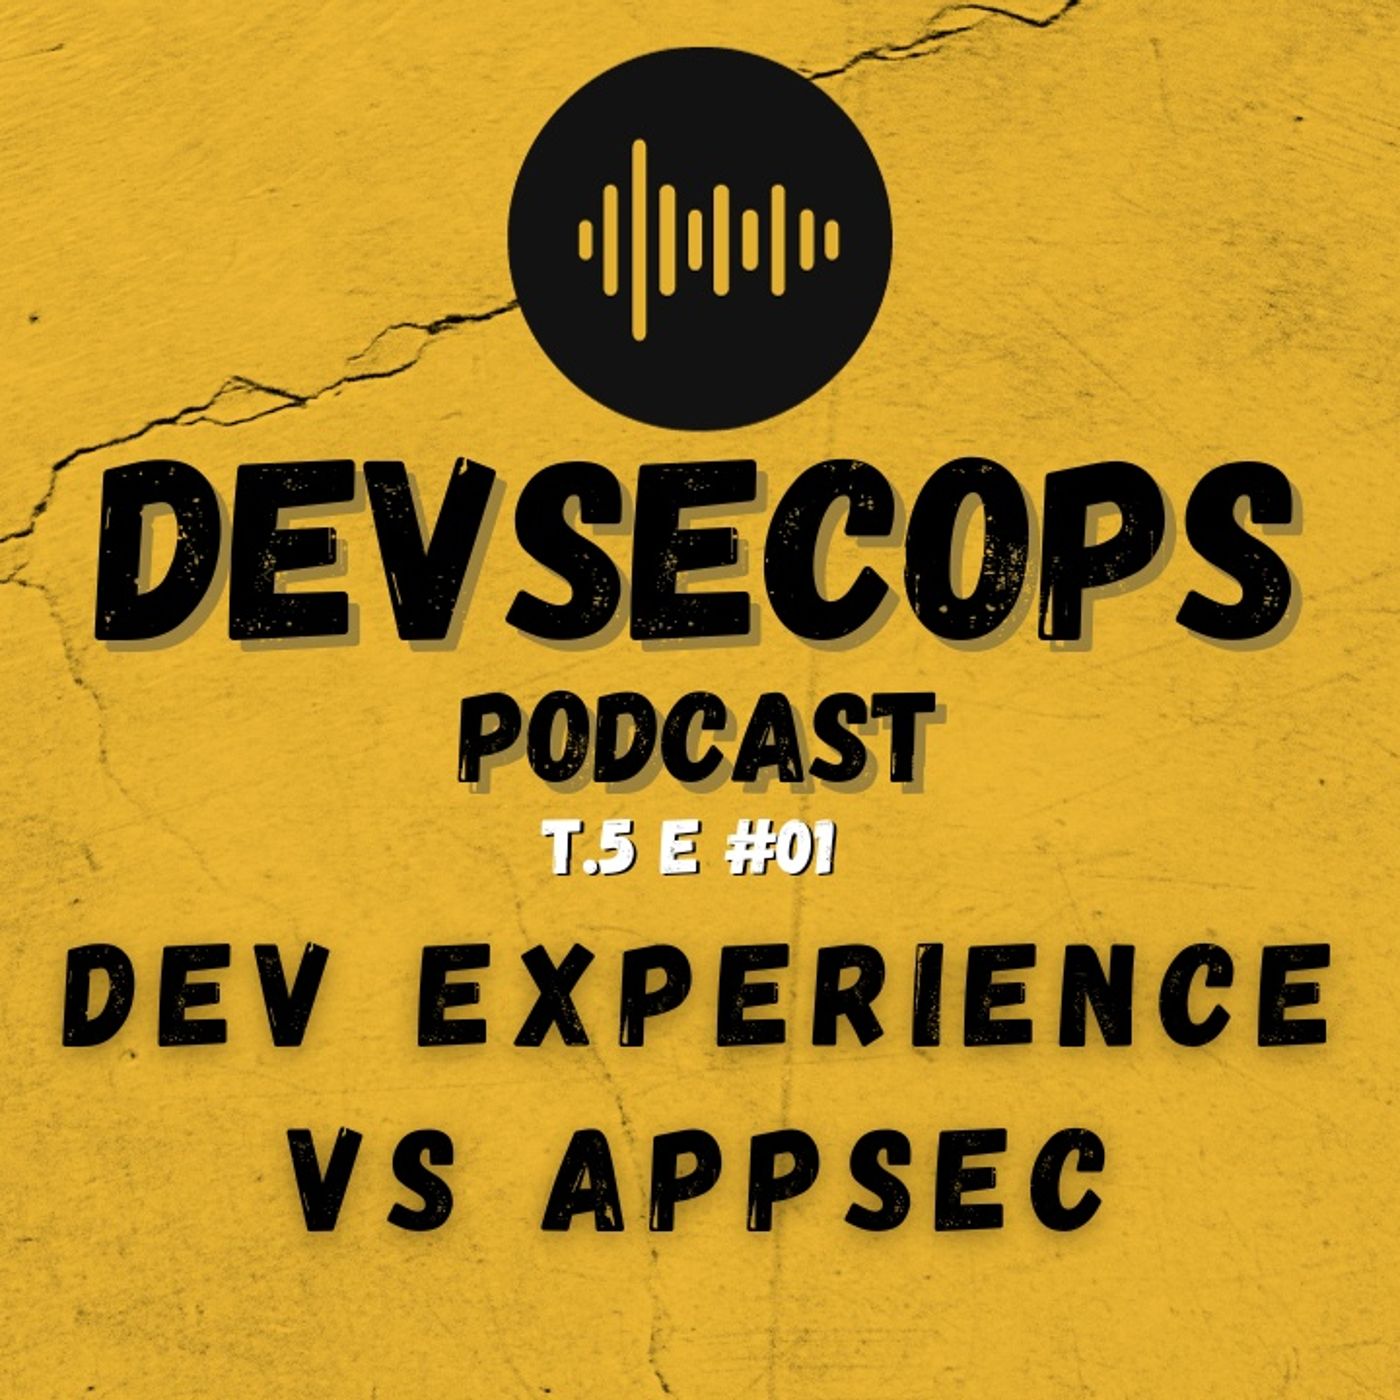 #05-01 - Dev experience VS AppSec